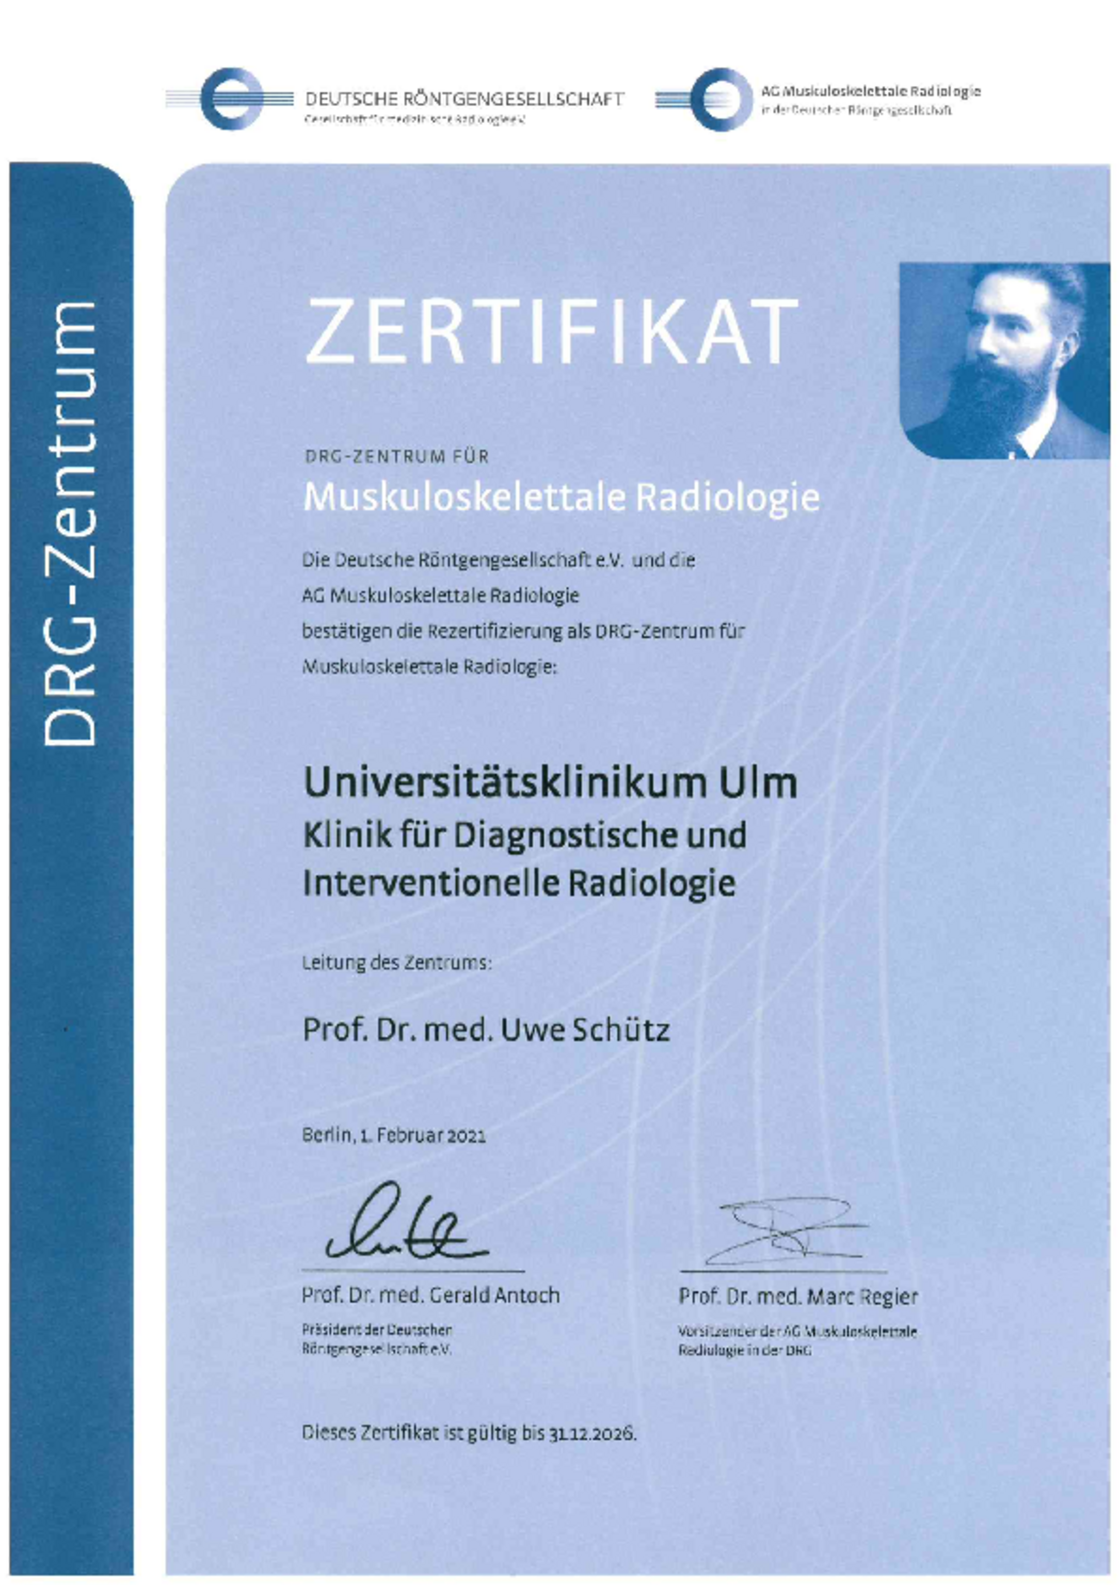 Zertifikat: DRG-Zentrum für Muskuloskelettale Radiologie